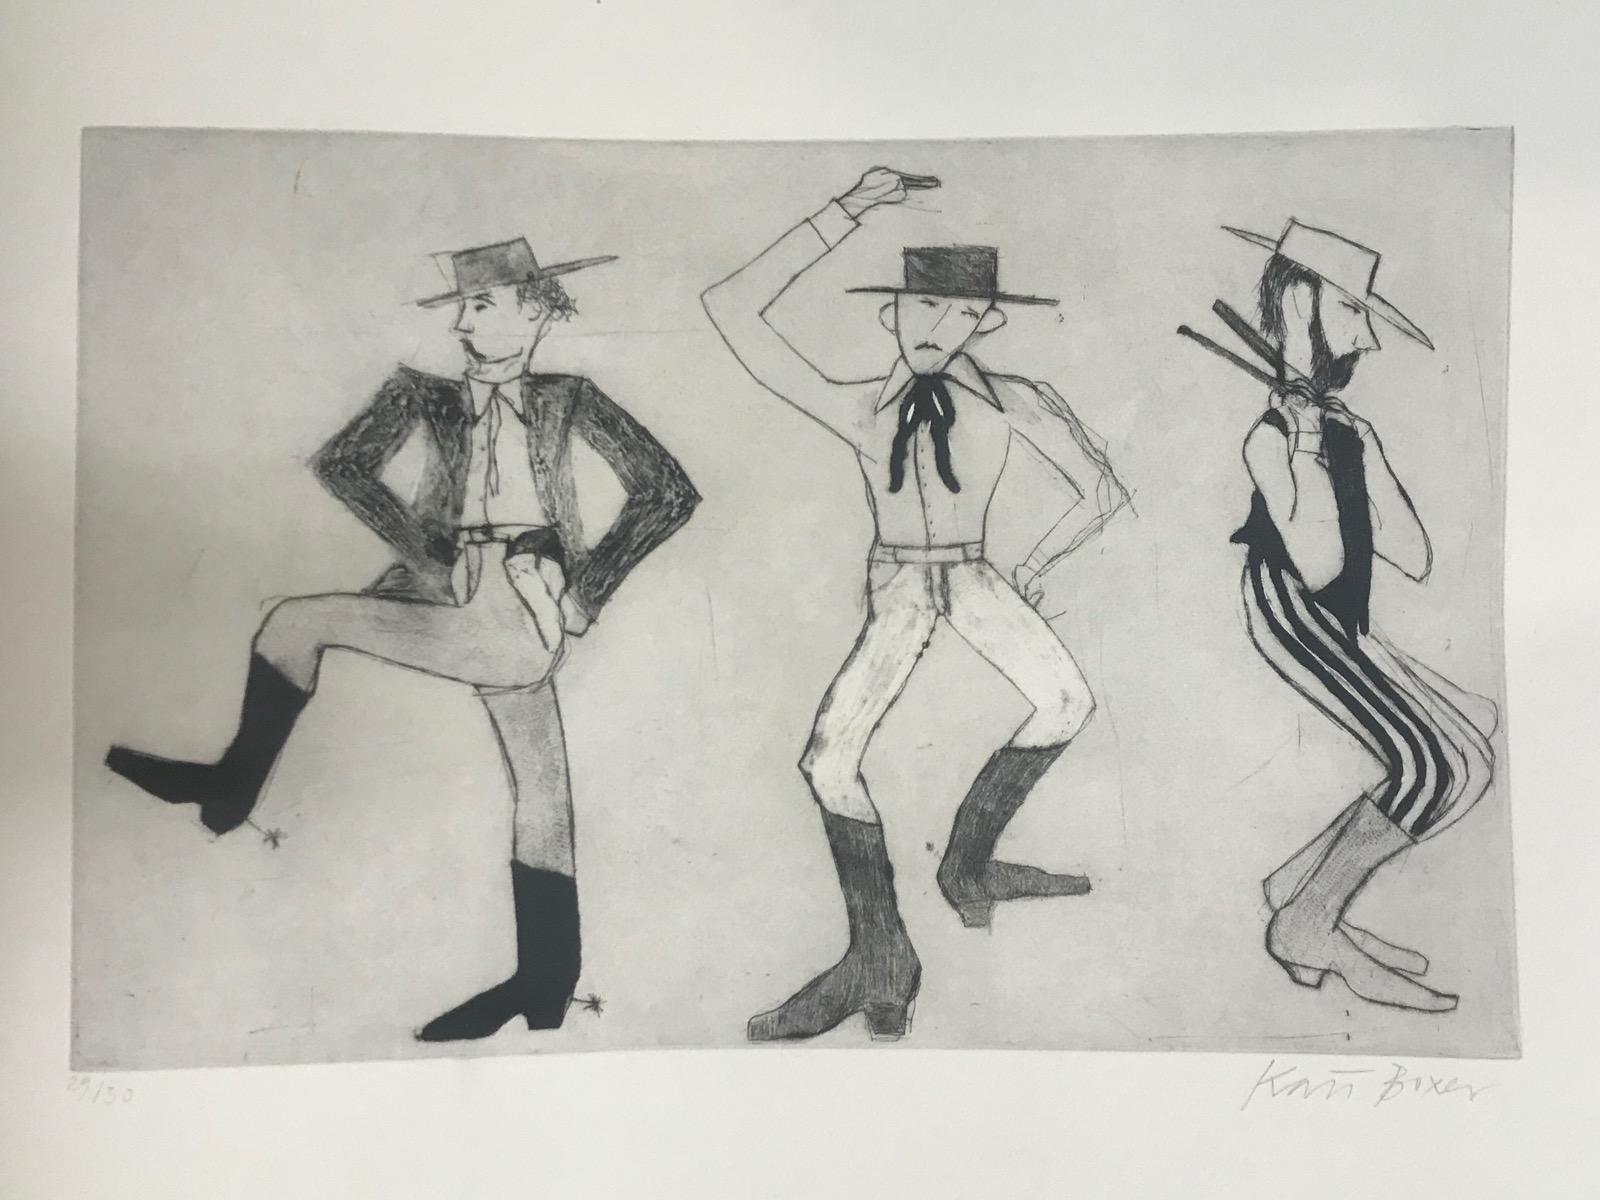 Cowboy Dancers, Tirage en édition limitée, Cowboy, Dancing, Tirage noir et blanc - Print de Kate Boxer 